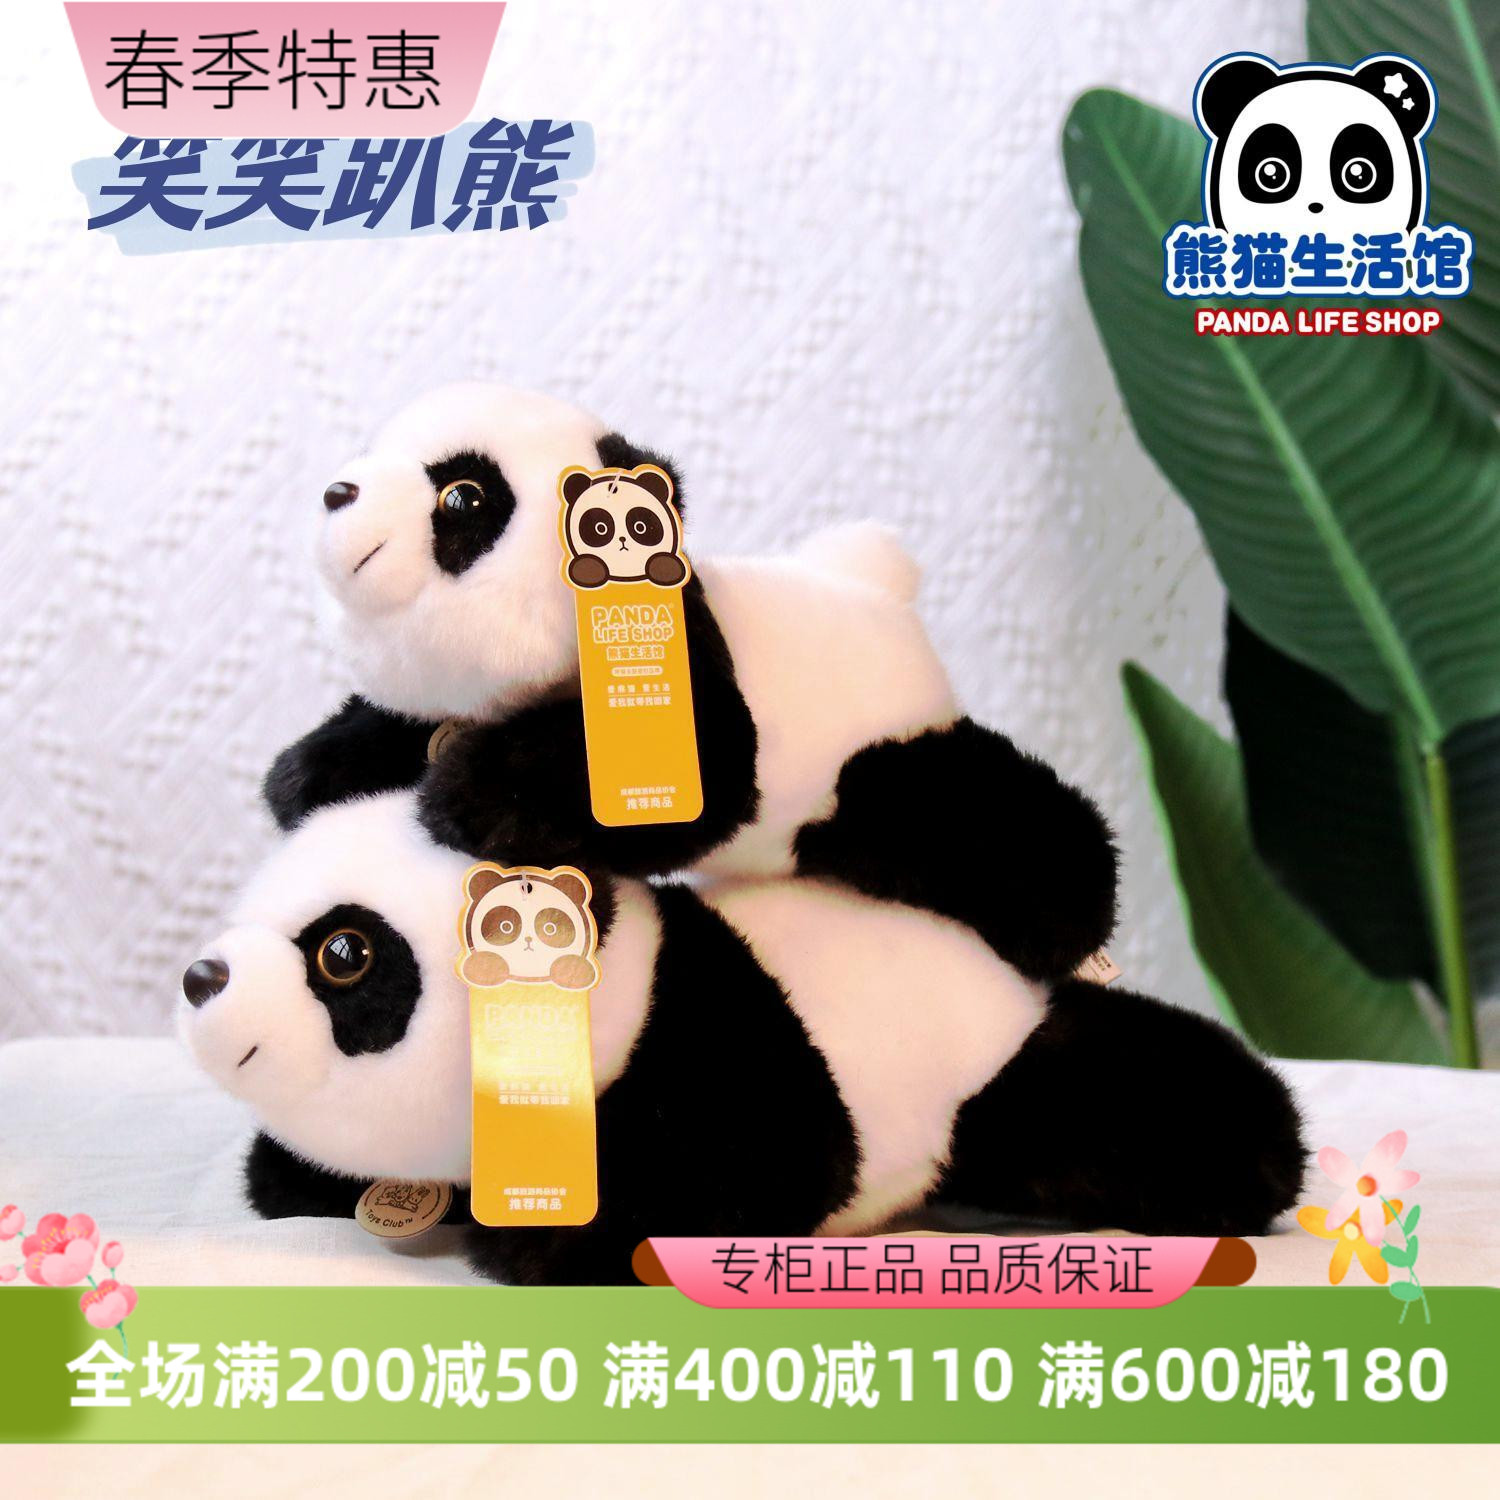 熊猫生活馆笑笑趴熊仿真毛绒玩偶玩具成都机场熊猫基地礼品纪念品